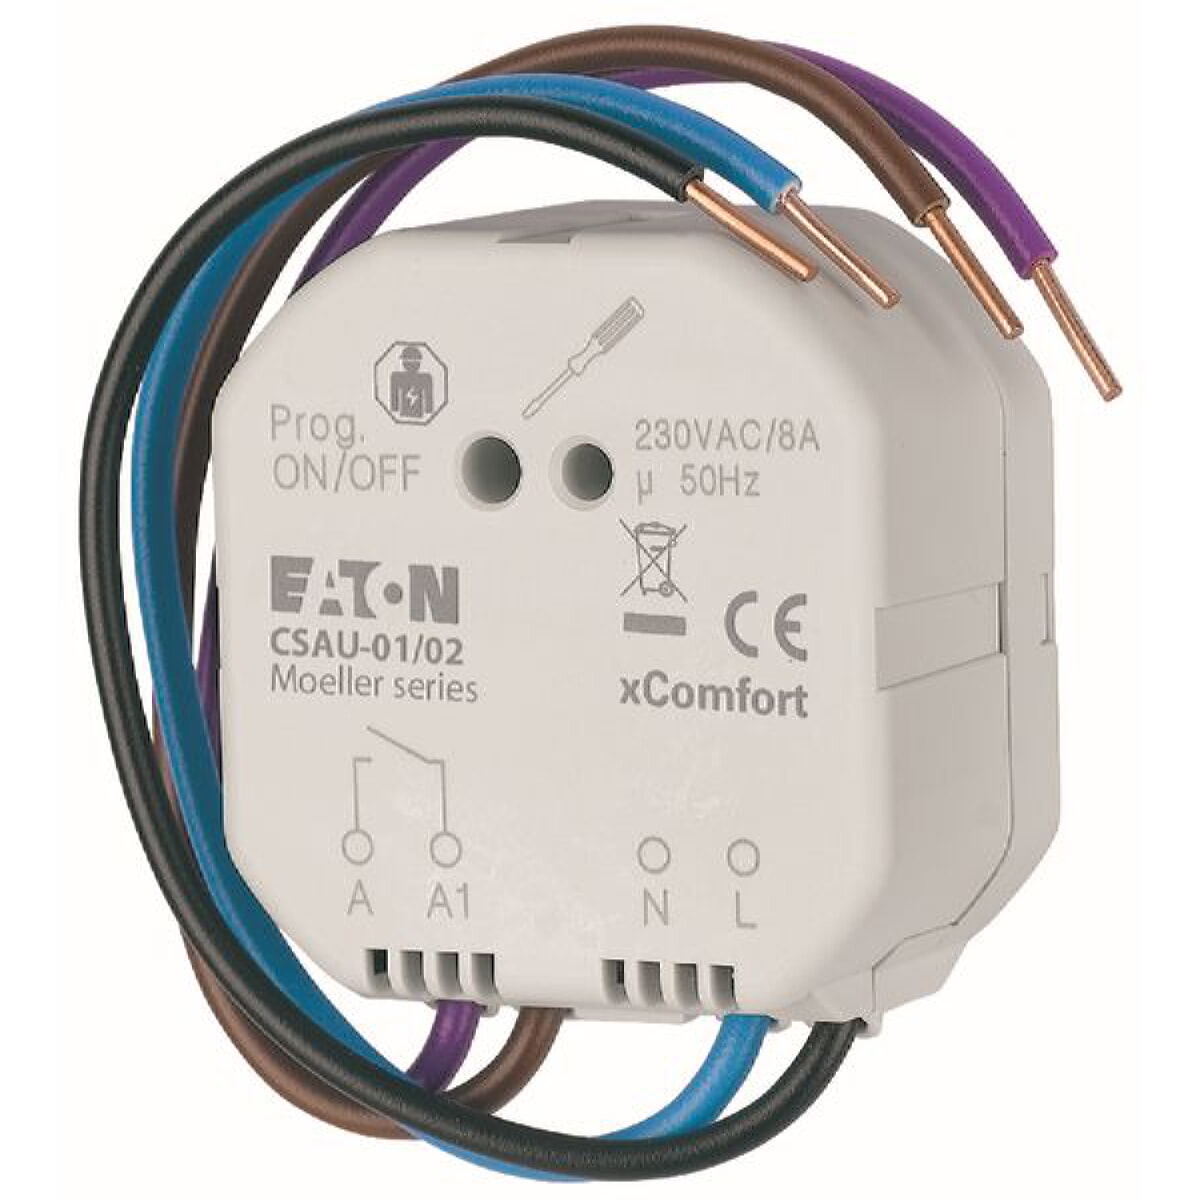 EATON Electric switching actuator CSAU-01/02 1gang